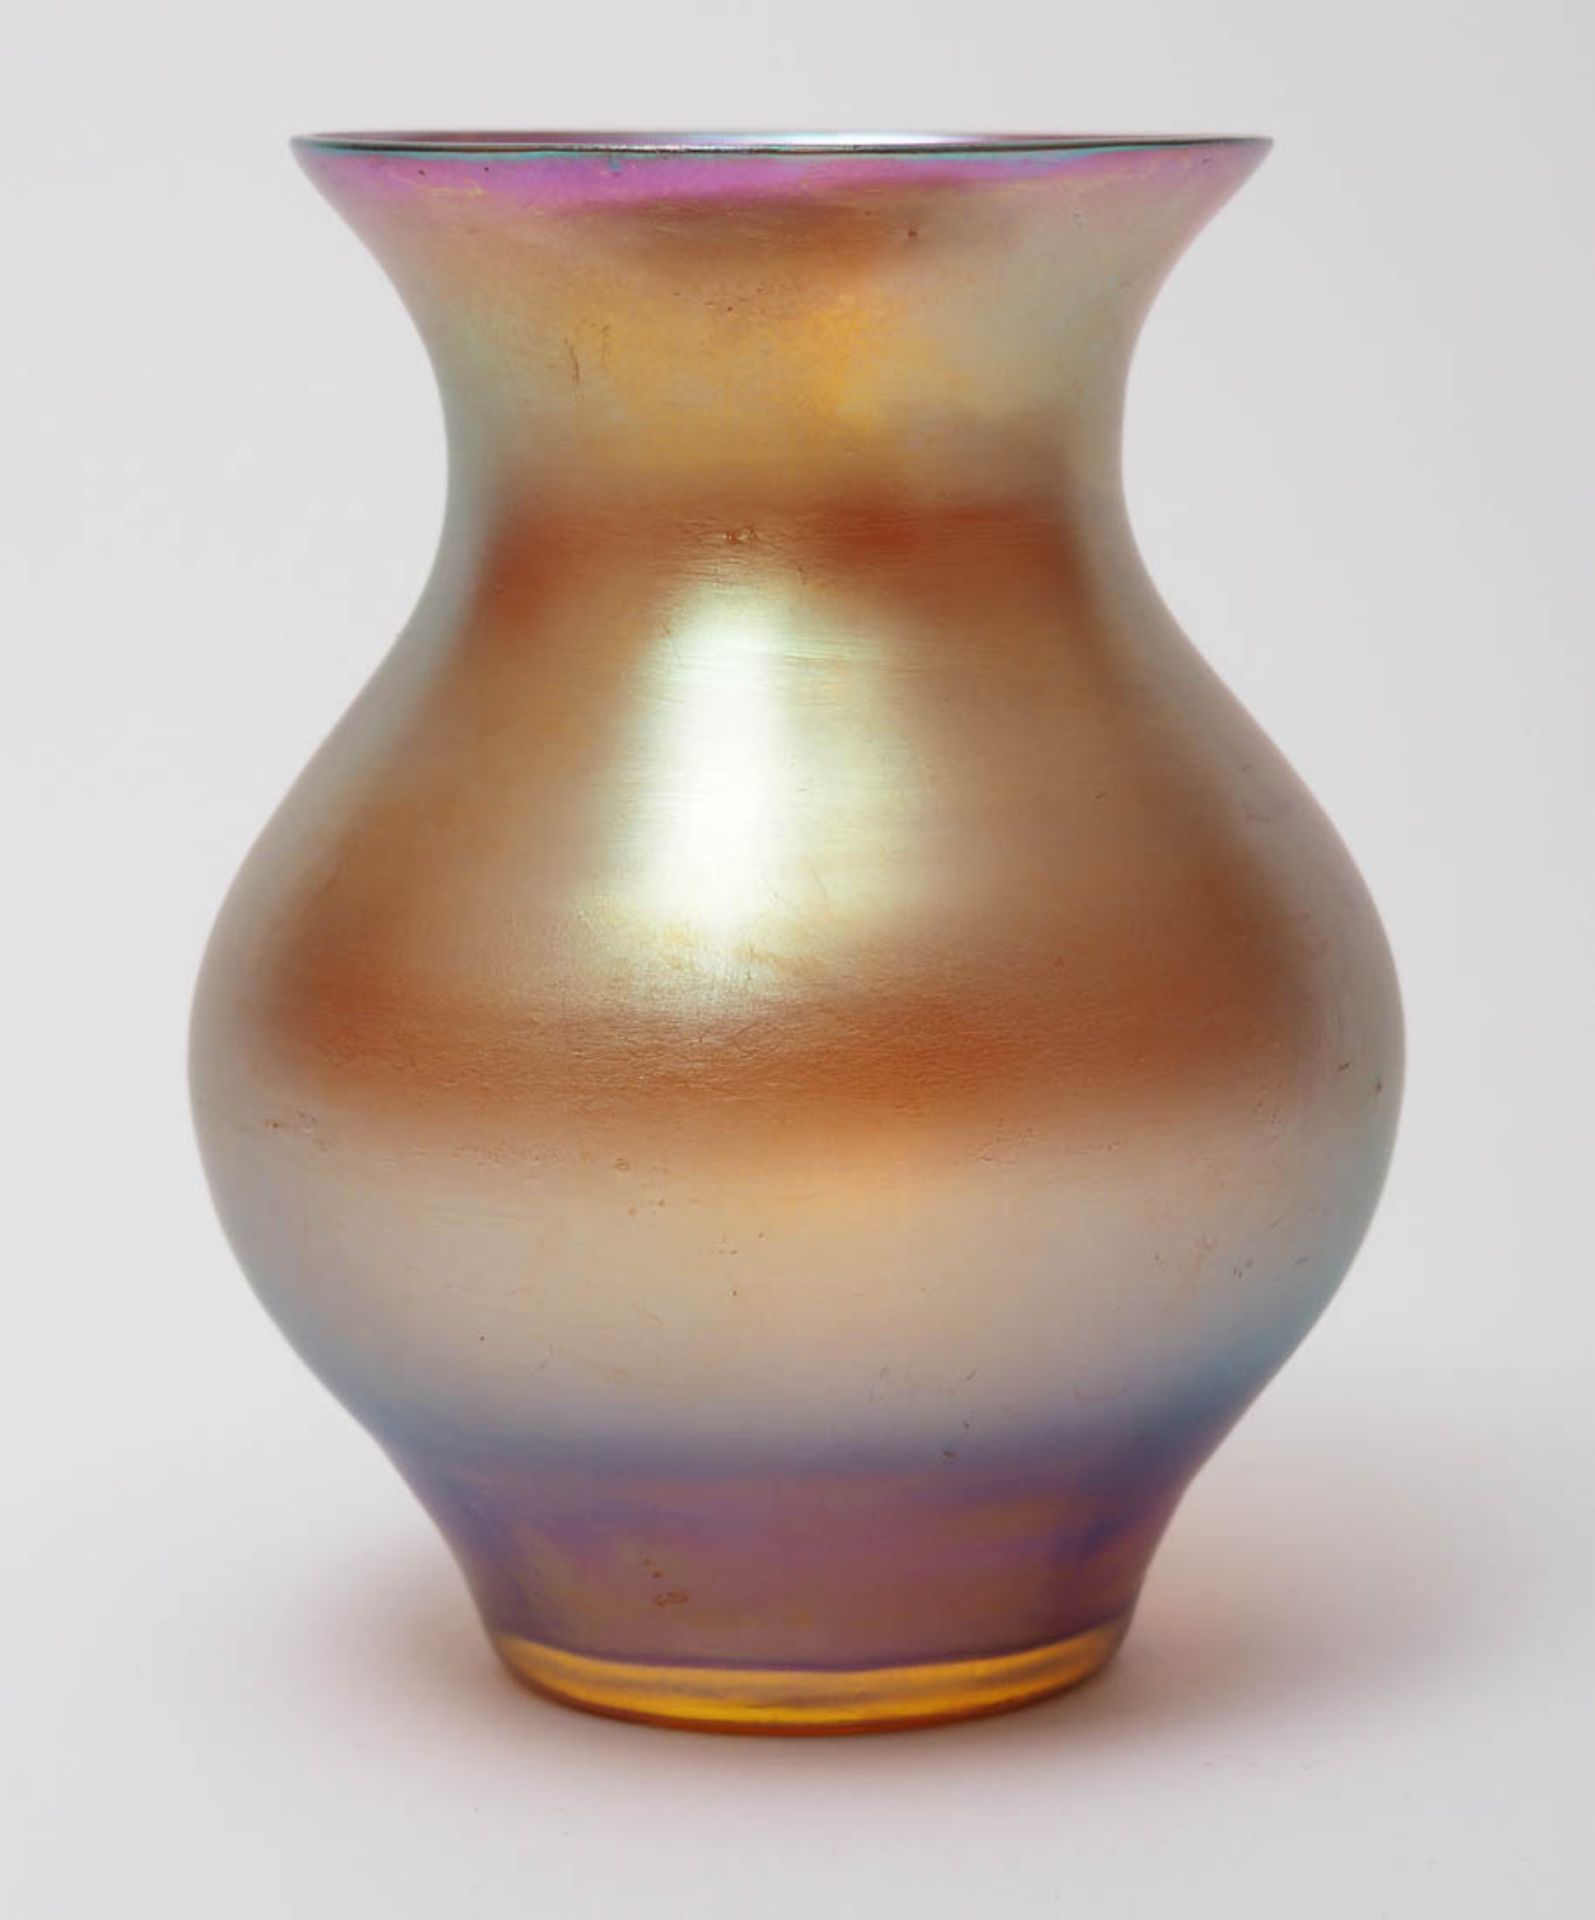 Myra-Vase, WMF Bauchiger Korpus mit ausgestelltem Rand. Goldfarben-violett irisierendes Glas. - Bild 2 aus 3